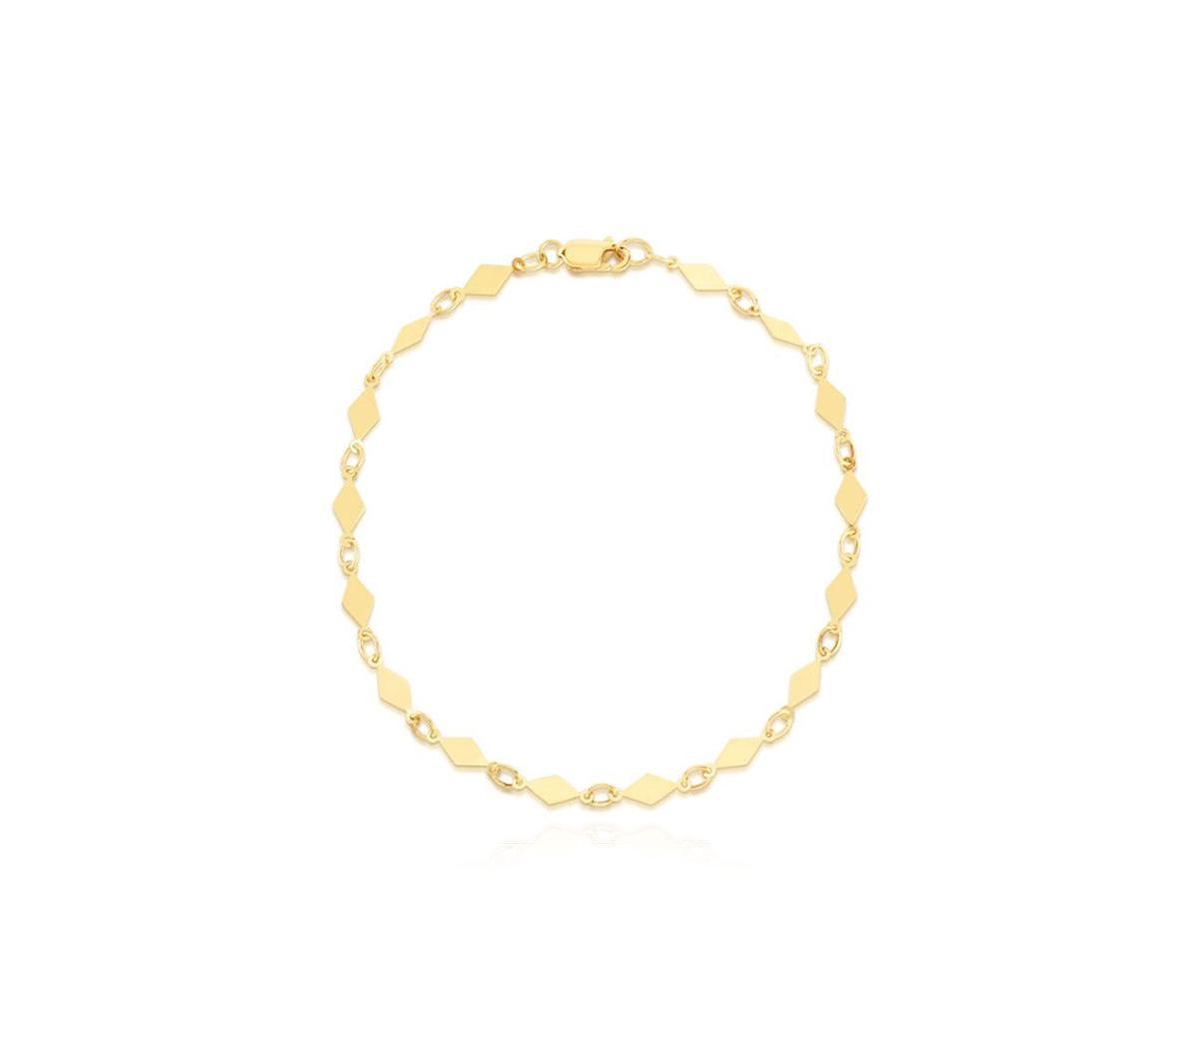 Gold Kite Chain Bracelet - Gold